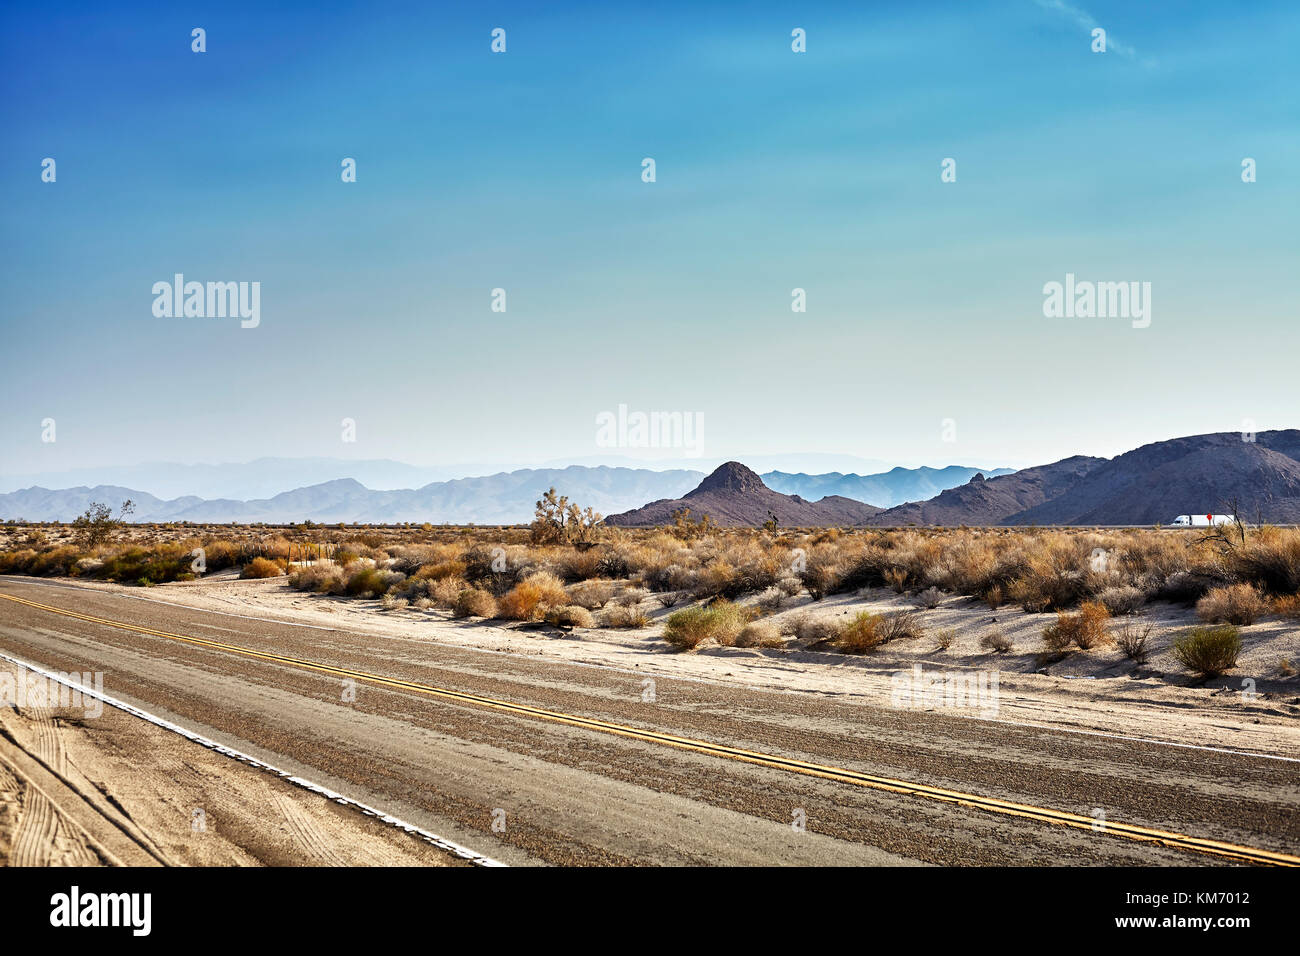 L'autoroute du désert au coucher du soleil, travel concept photo, USA. Banque D'Images